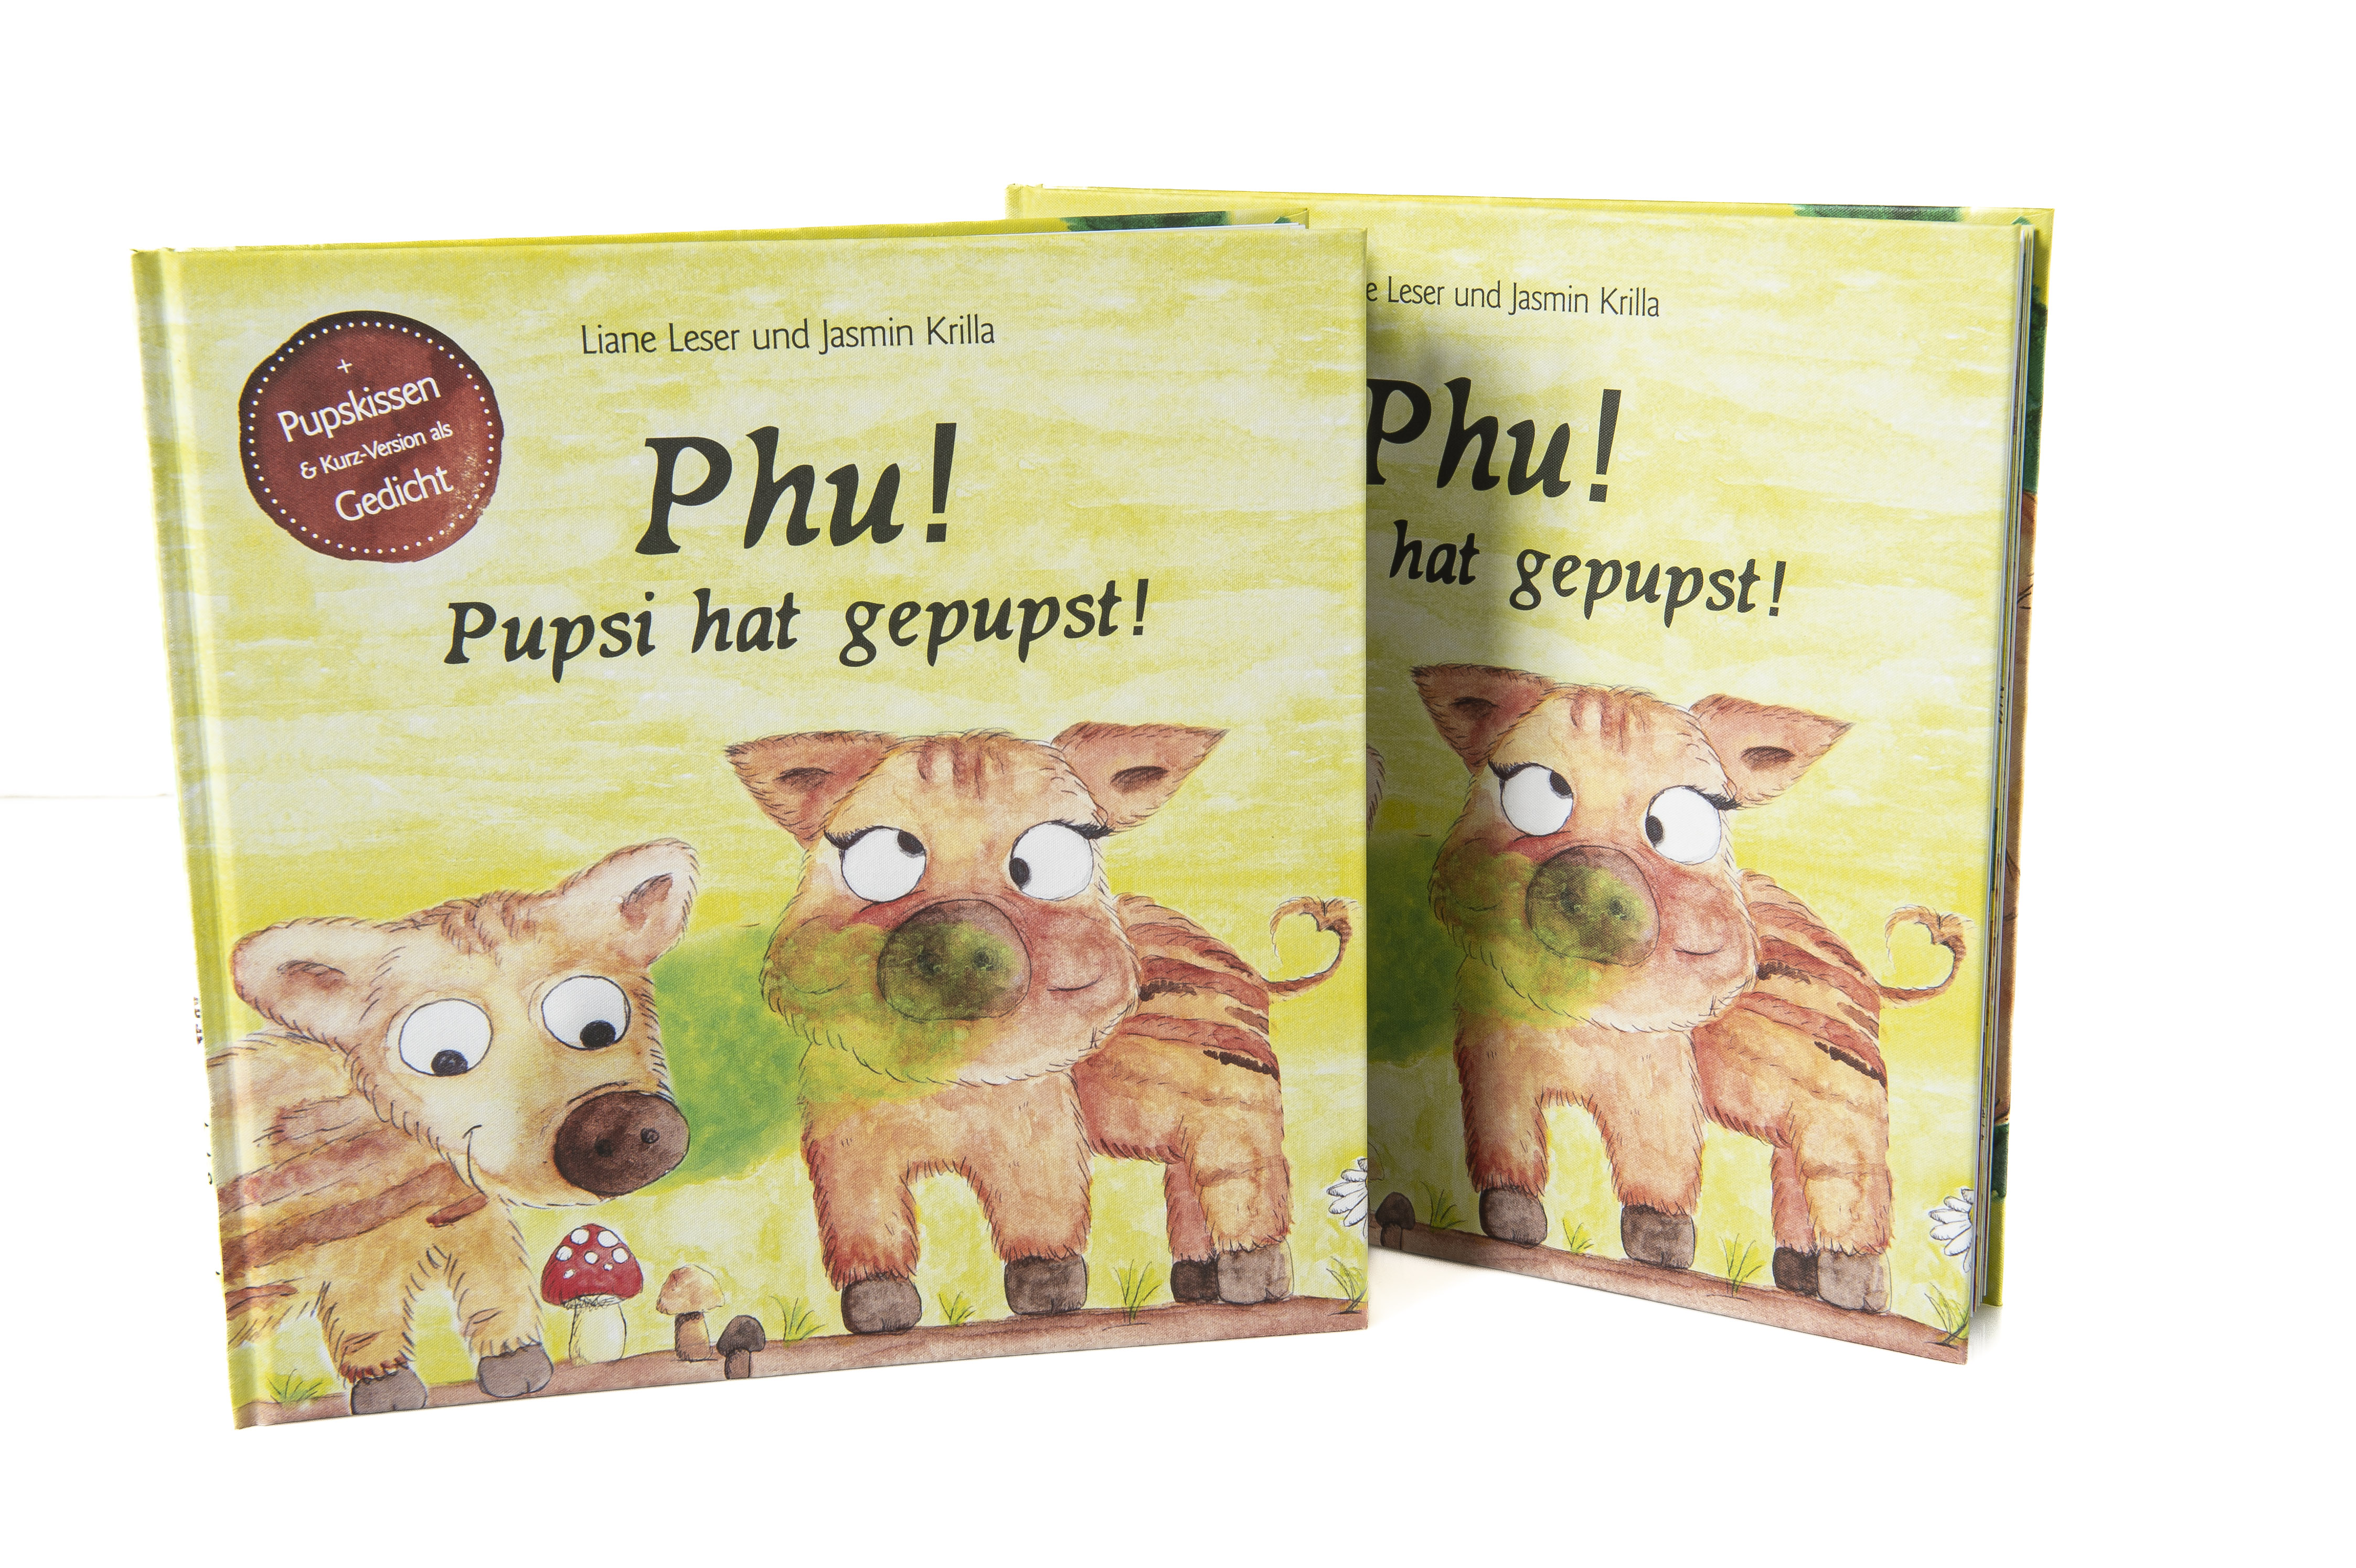 Zwei Exemplare des Buches ""Phu! Pupsi hat gepupst!". Auf dem Cover sind zwei Wildschweine illustriert. Eins verdreht die Augen, vor ihnen ist eine grüne Wolke abgebildet. 